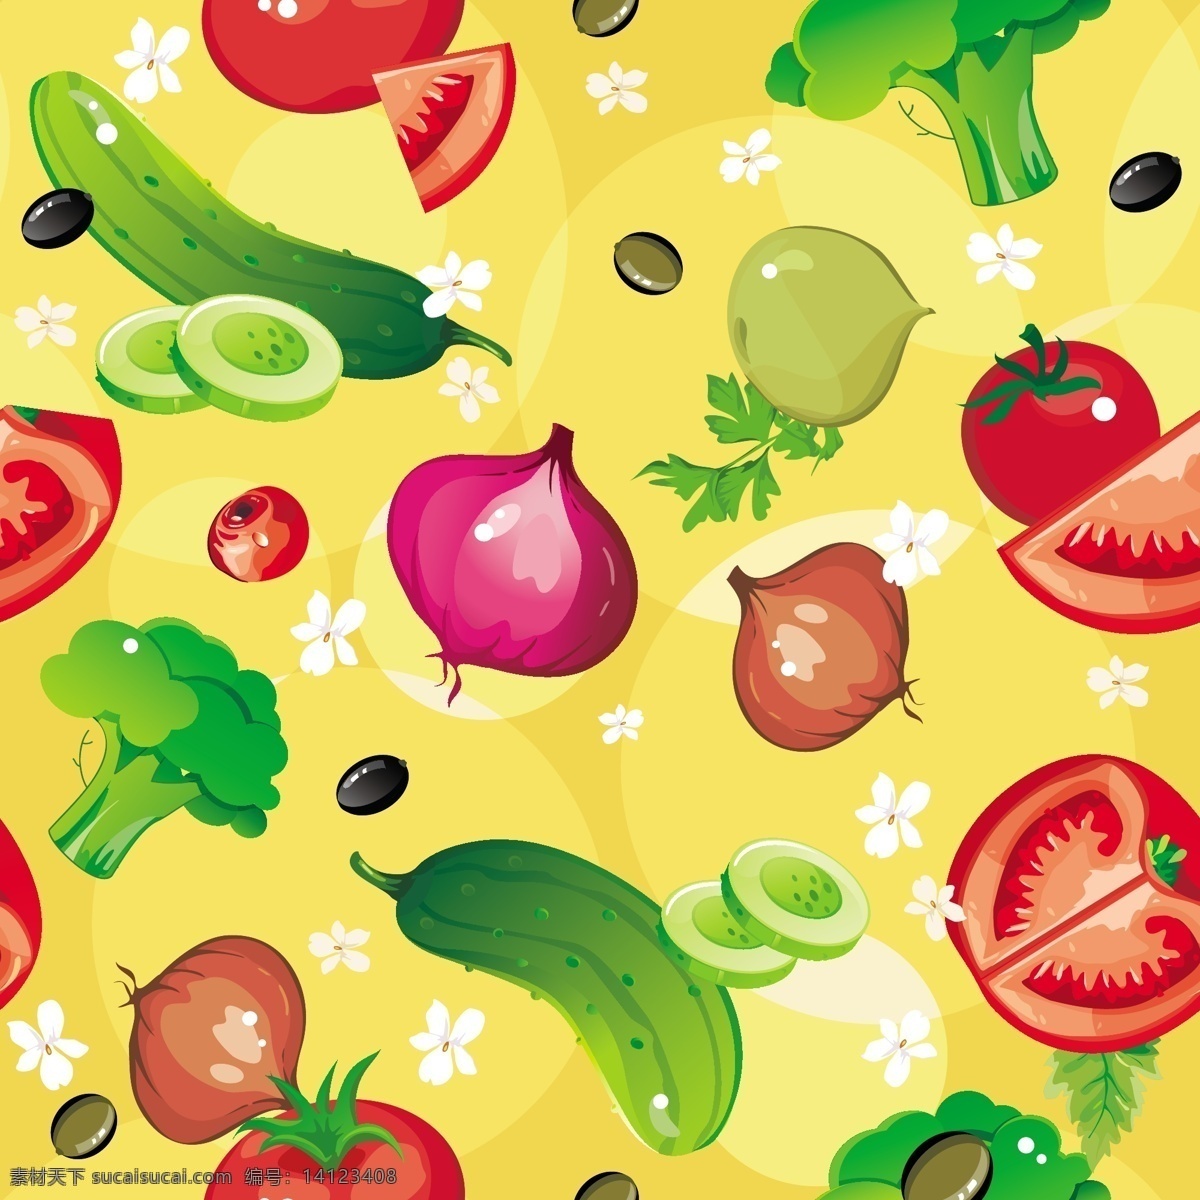 多种 精美 蔬菜 黄瓜 卡通 矢量素材 西红柿 洋葱 菜椒 矢量图 日常生活